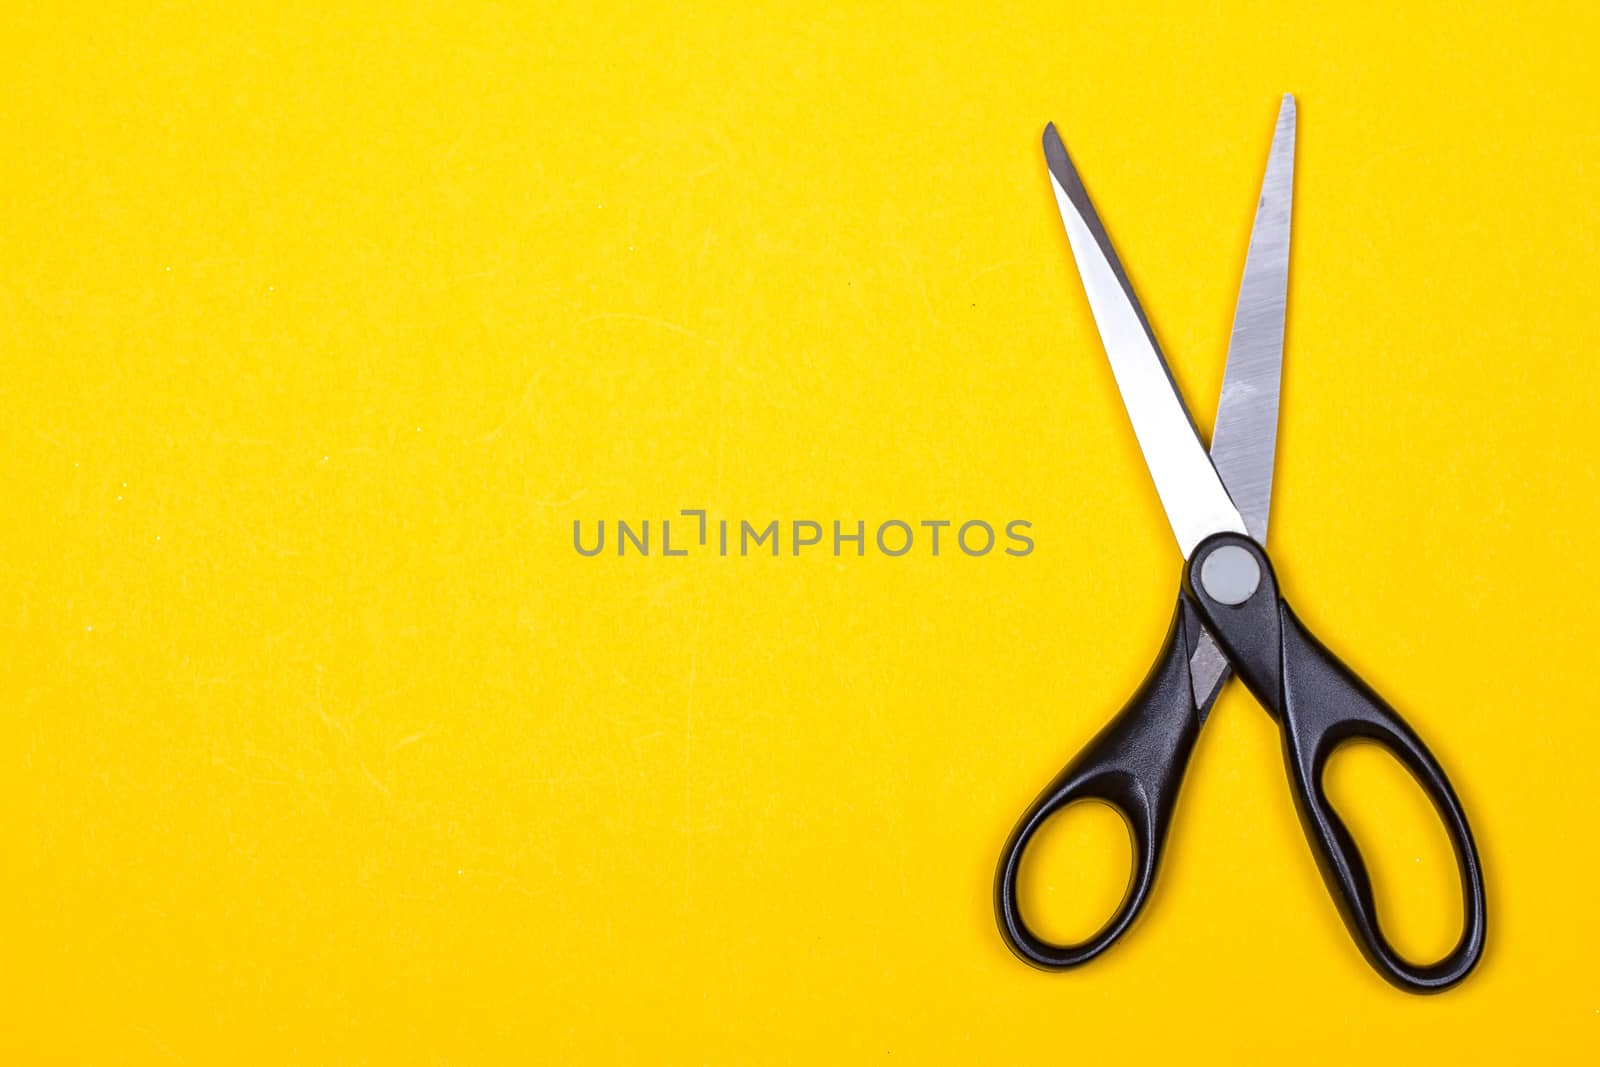 Black stationery scissors by victosha